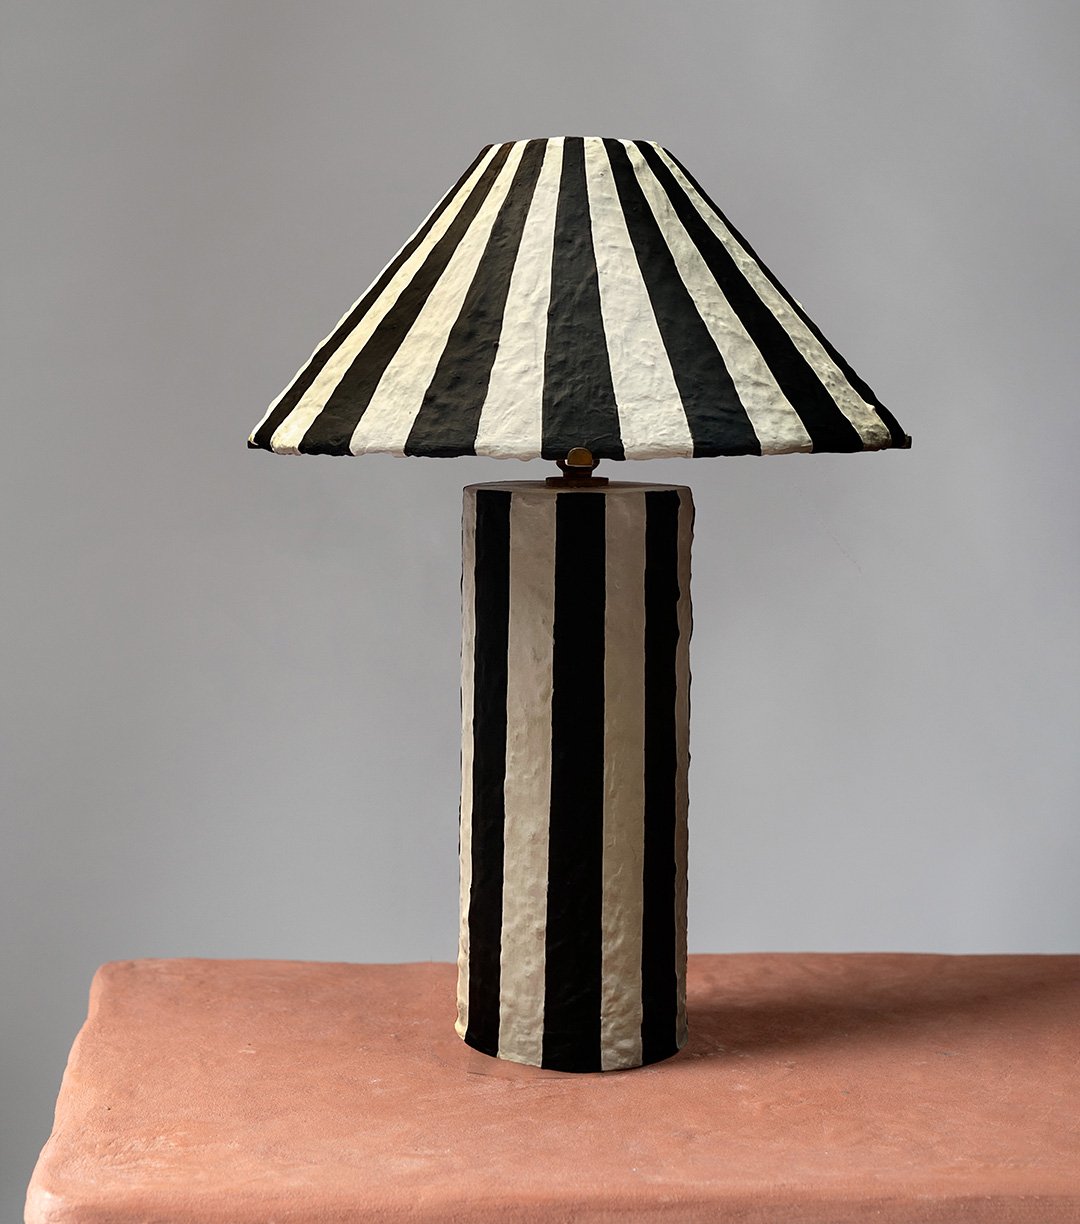 Striped Lamp designed by the Ravi Vazirani Design Studio in Effect Magazine